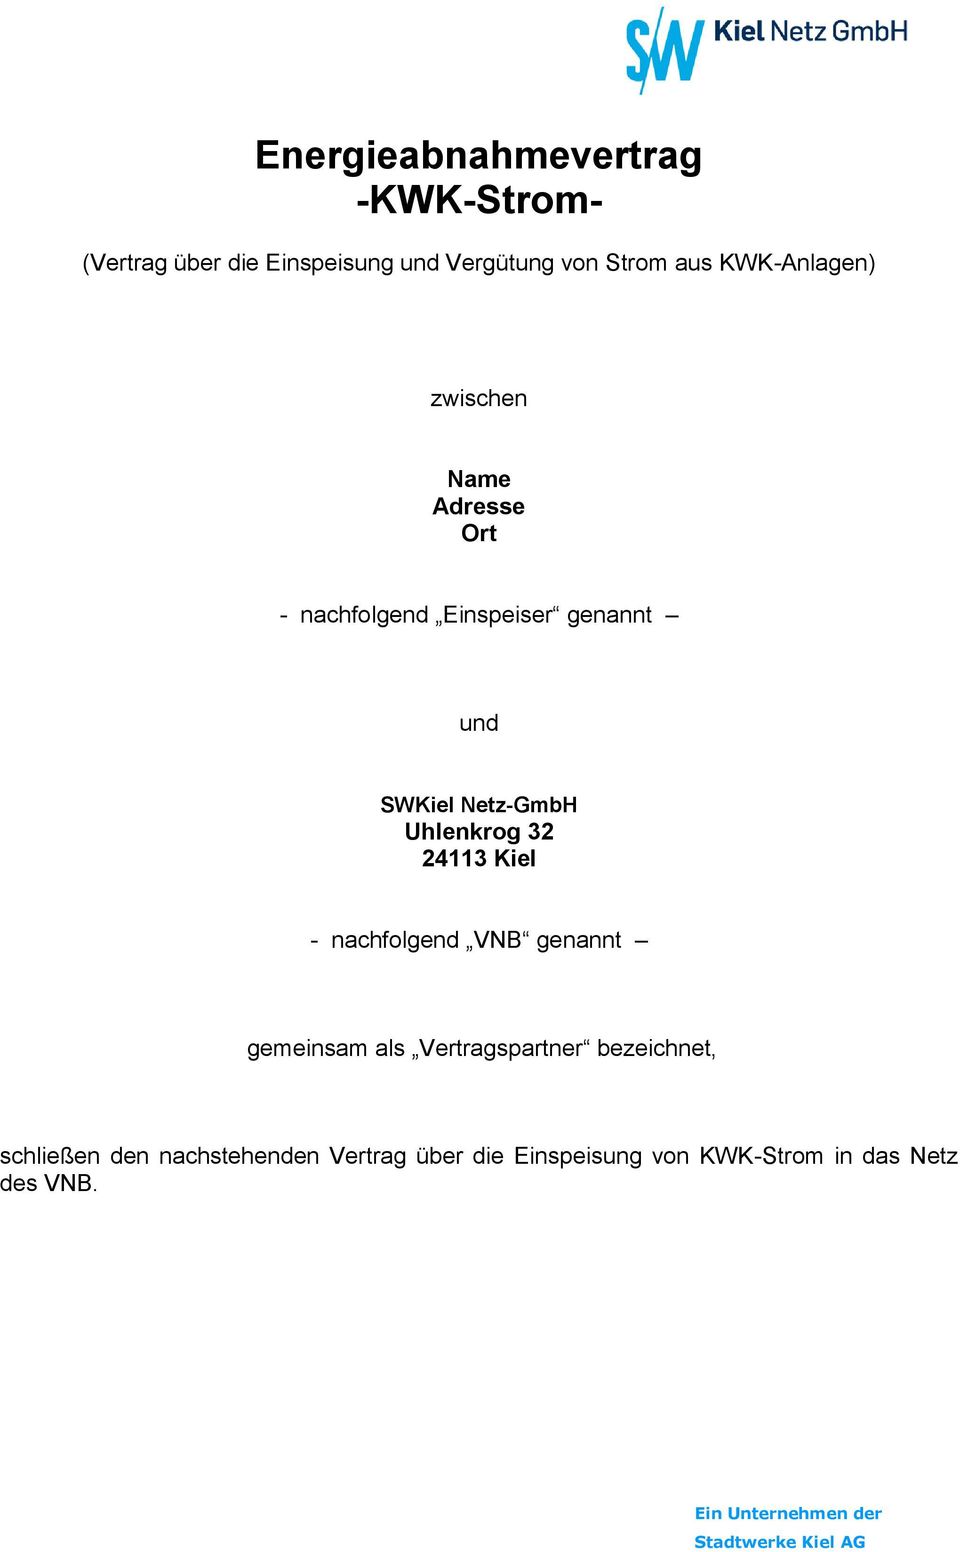 Netz-GmbH Uhlenkrog 32 24113 Kiel - nachfolgend VNB genannt gemeinsam als Vertragspartner